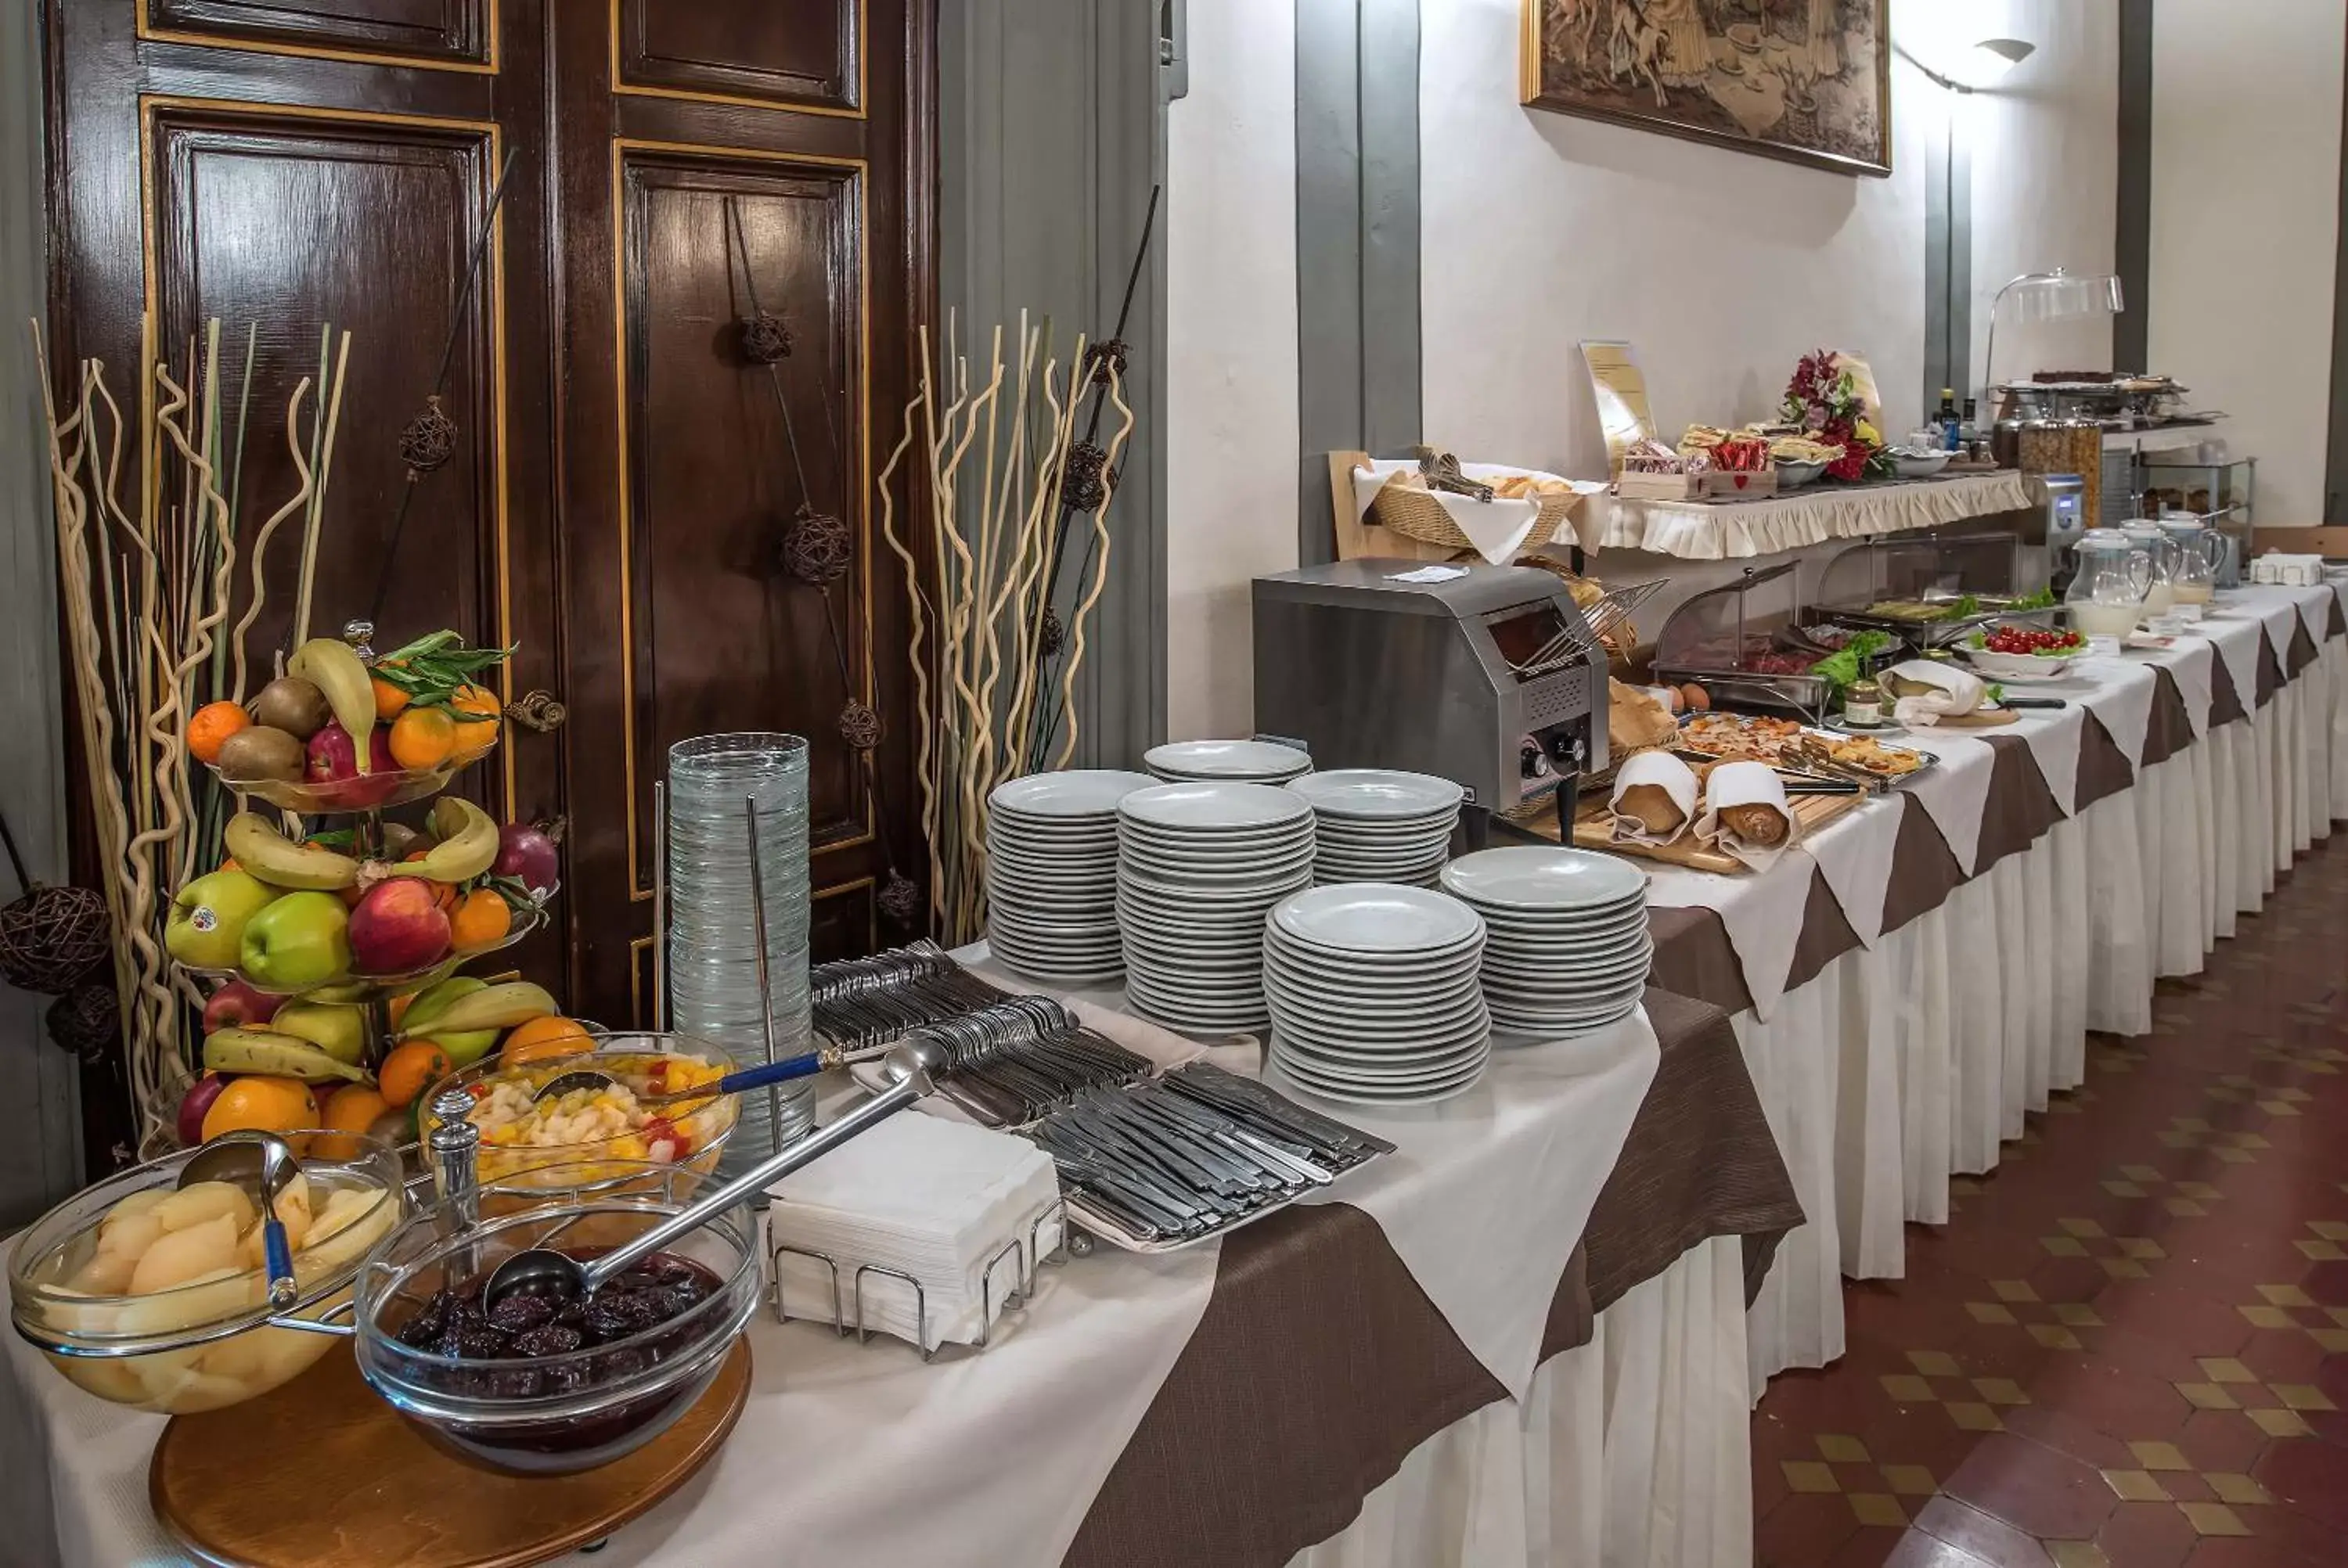 Buffet breakfast, Food in Hotel Paris